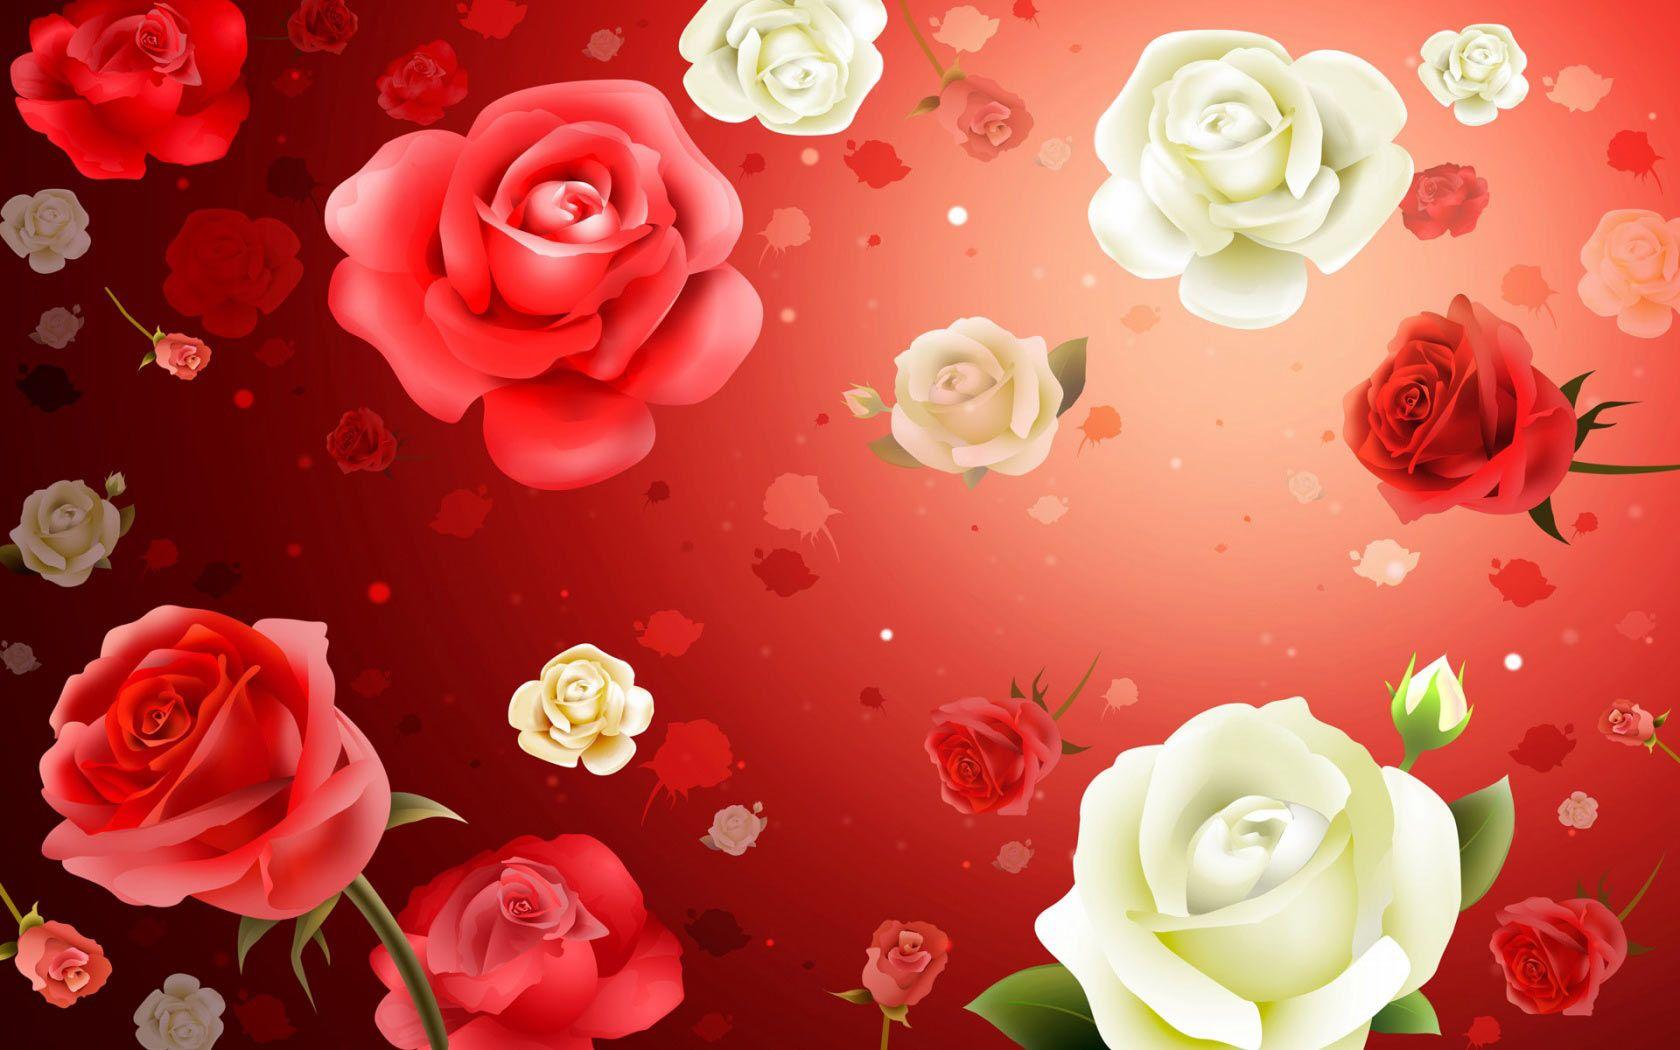 Rose Flowers Wallpaper For Pc Wallpaper